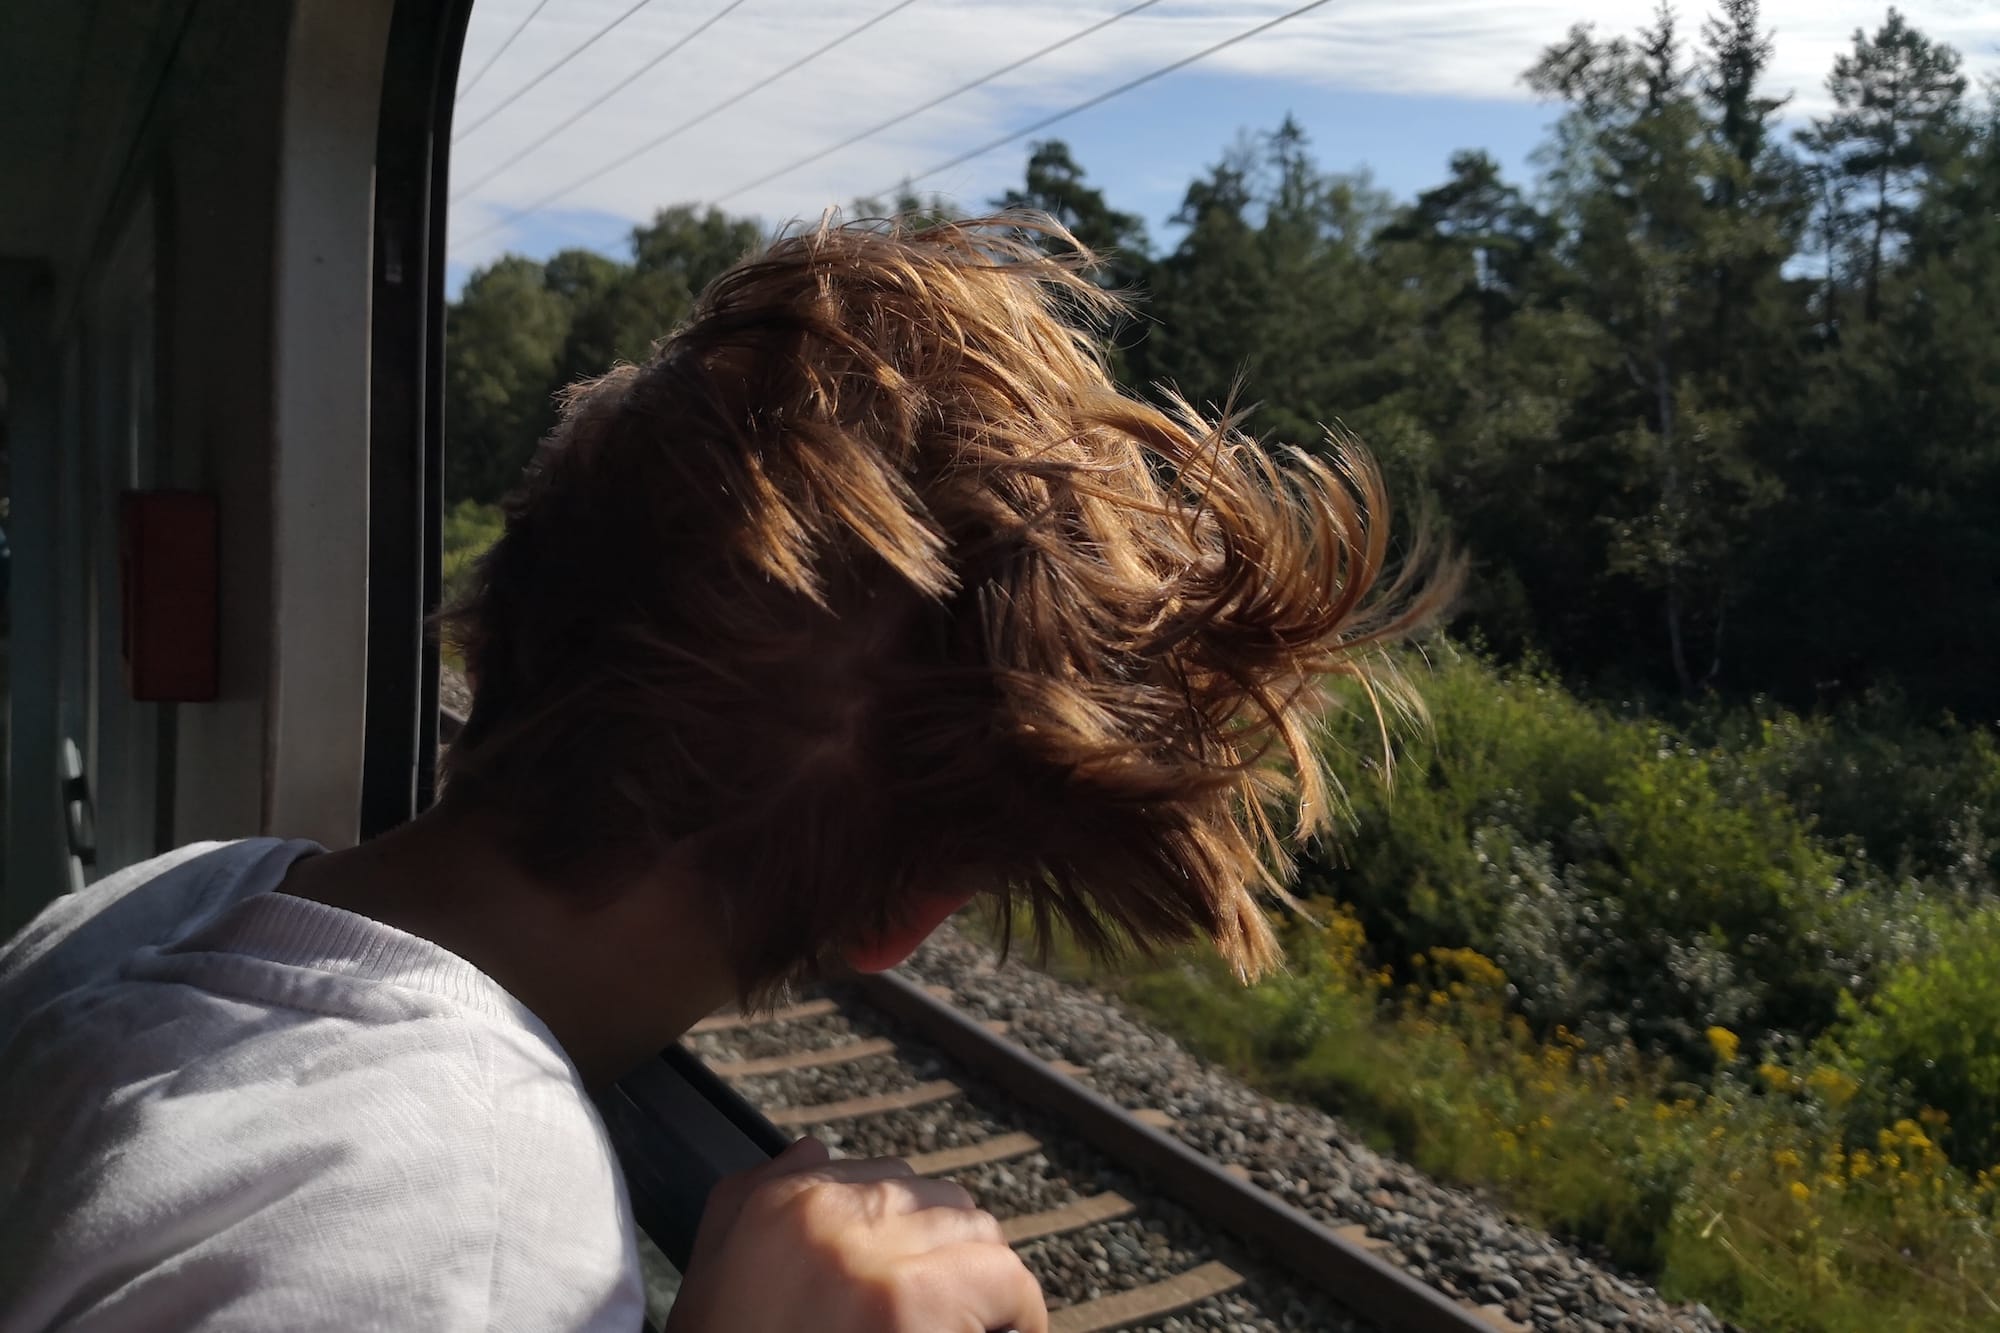 Kopf aus dem offenen Zugfenster